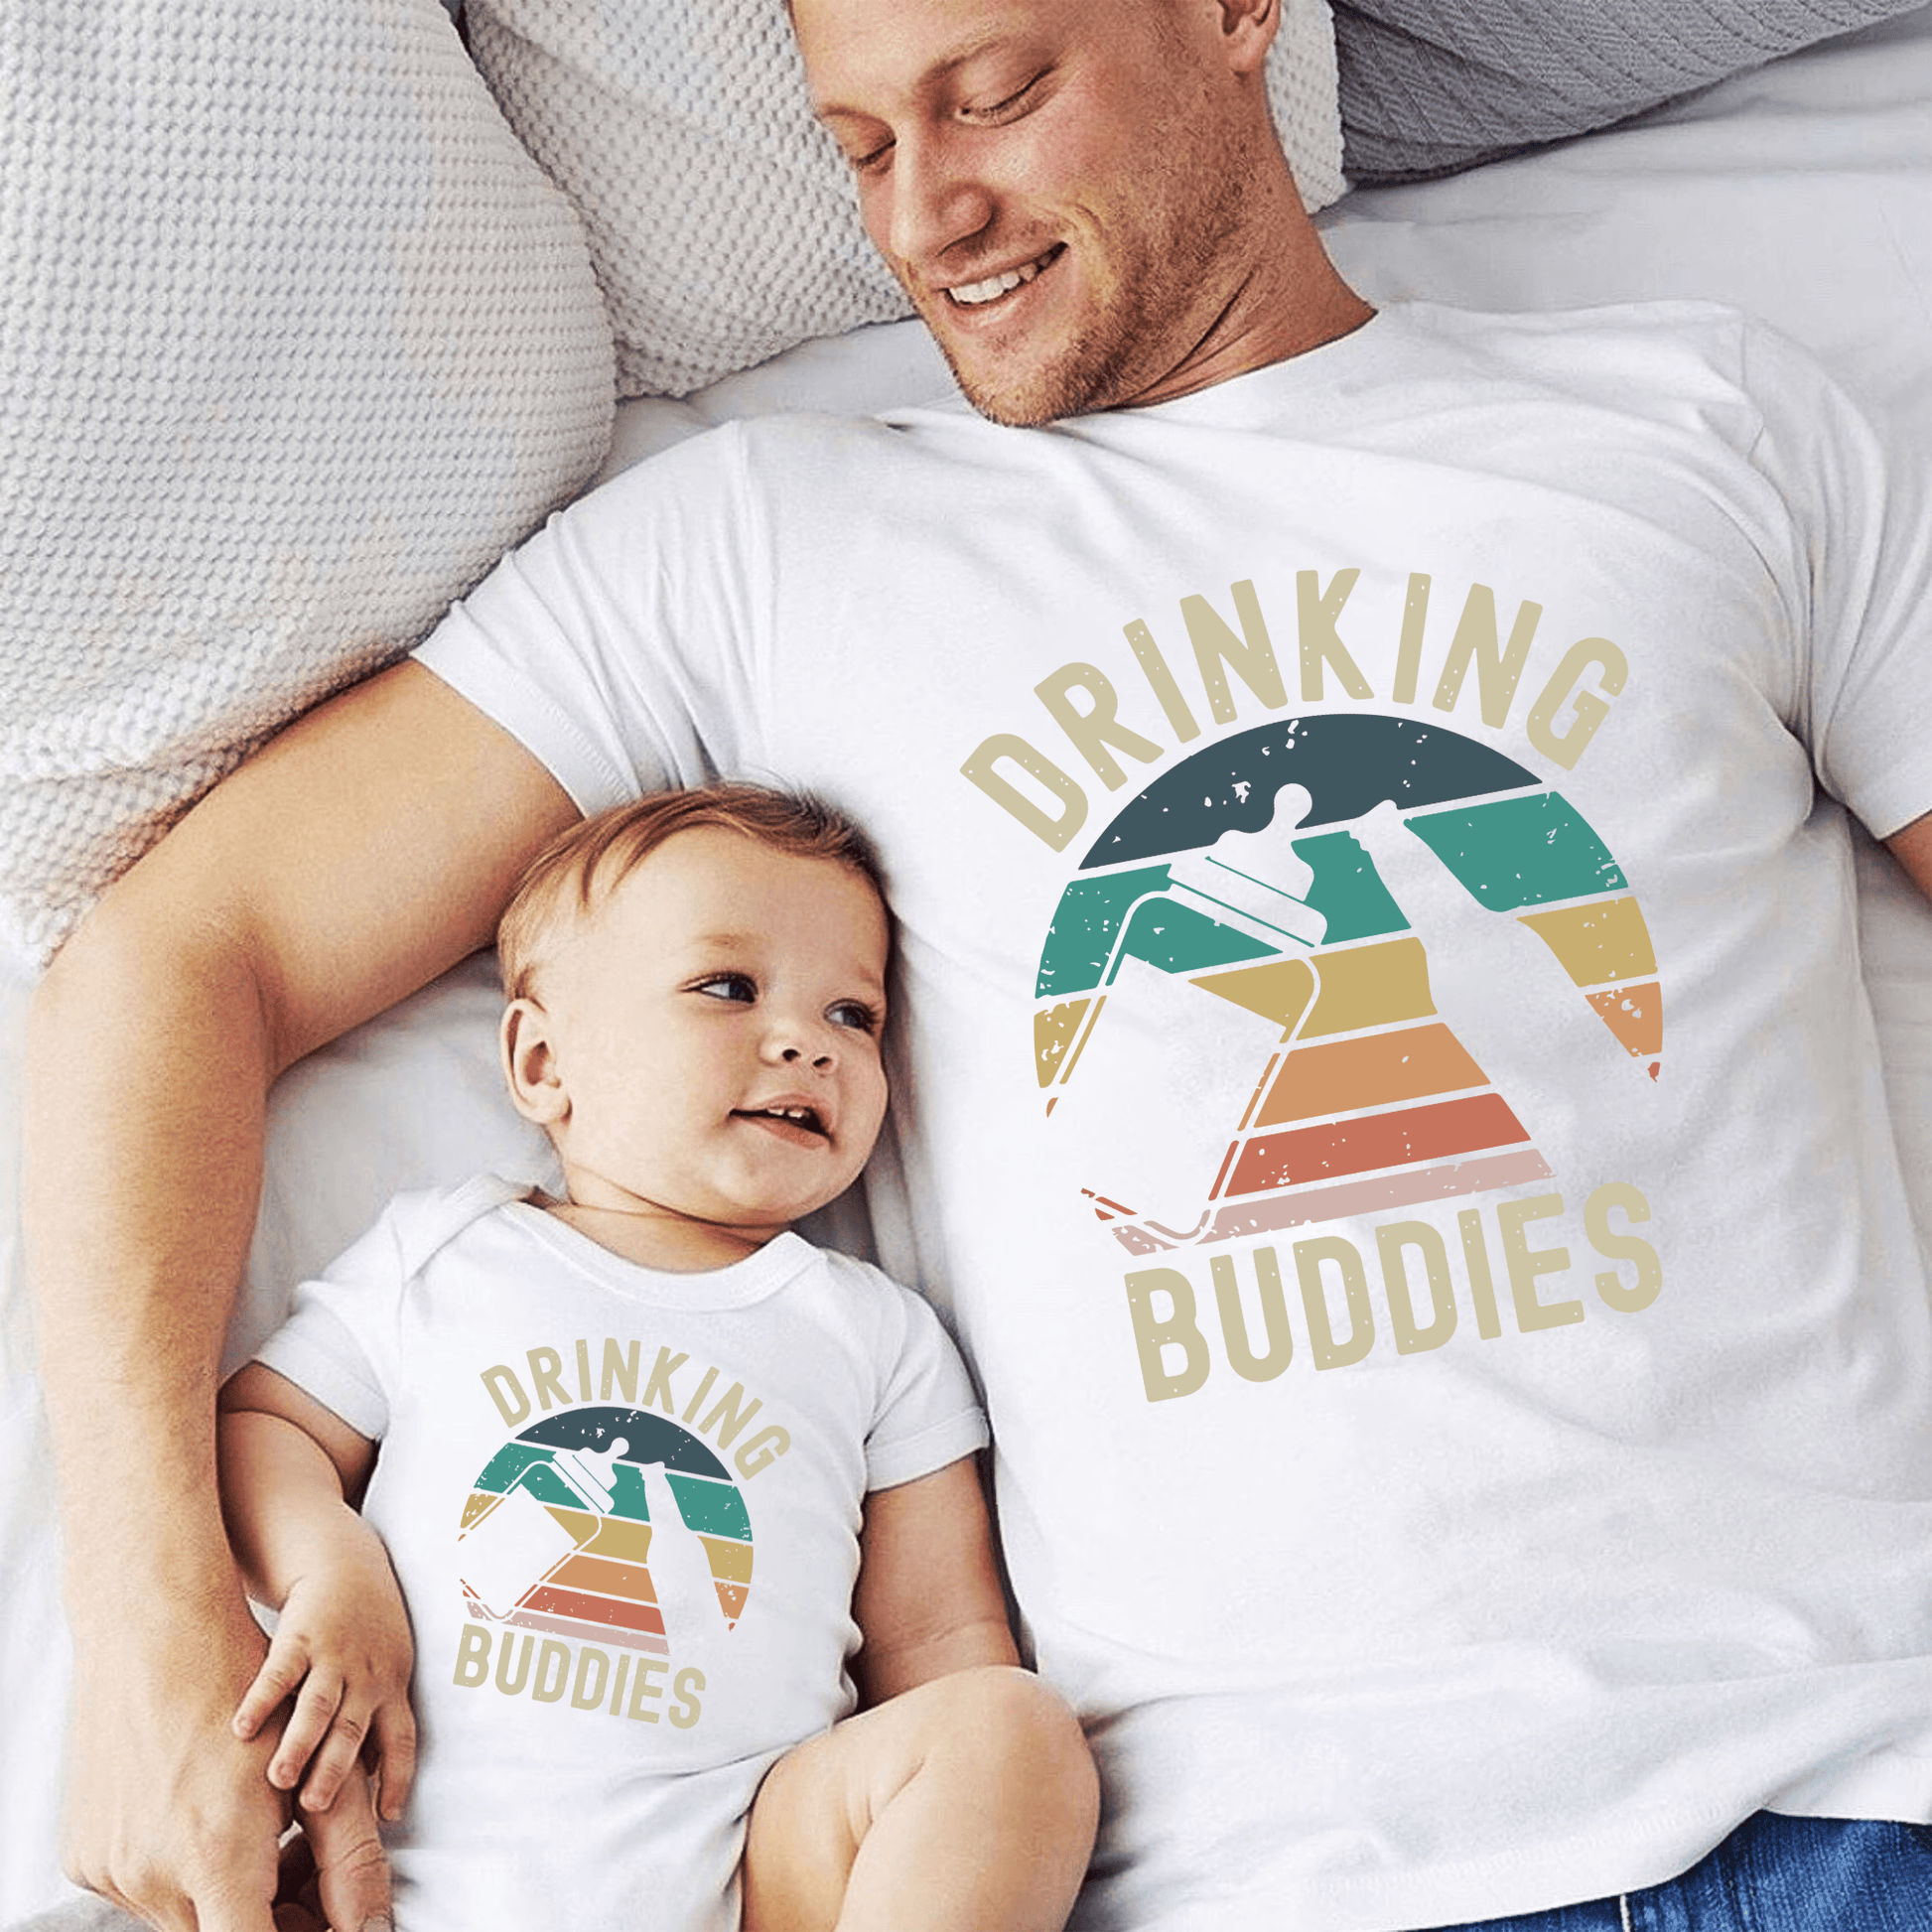 Trinkkumpel – Partnerlook T-Shirts für Vater und Kind - GiftHaus